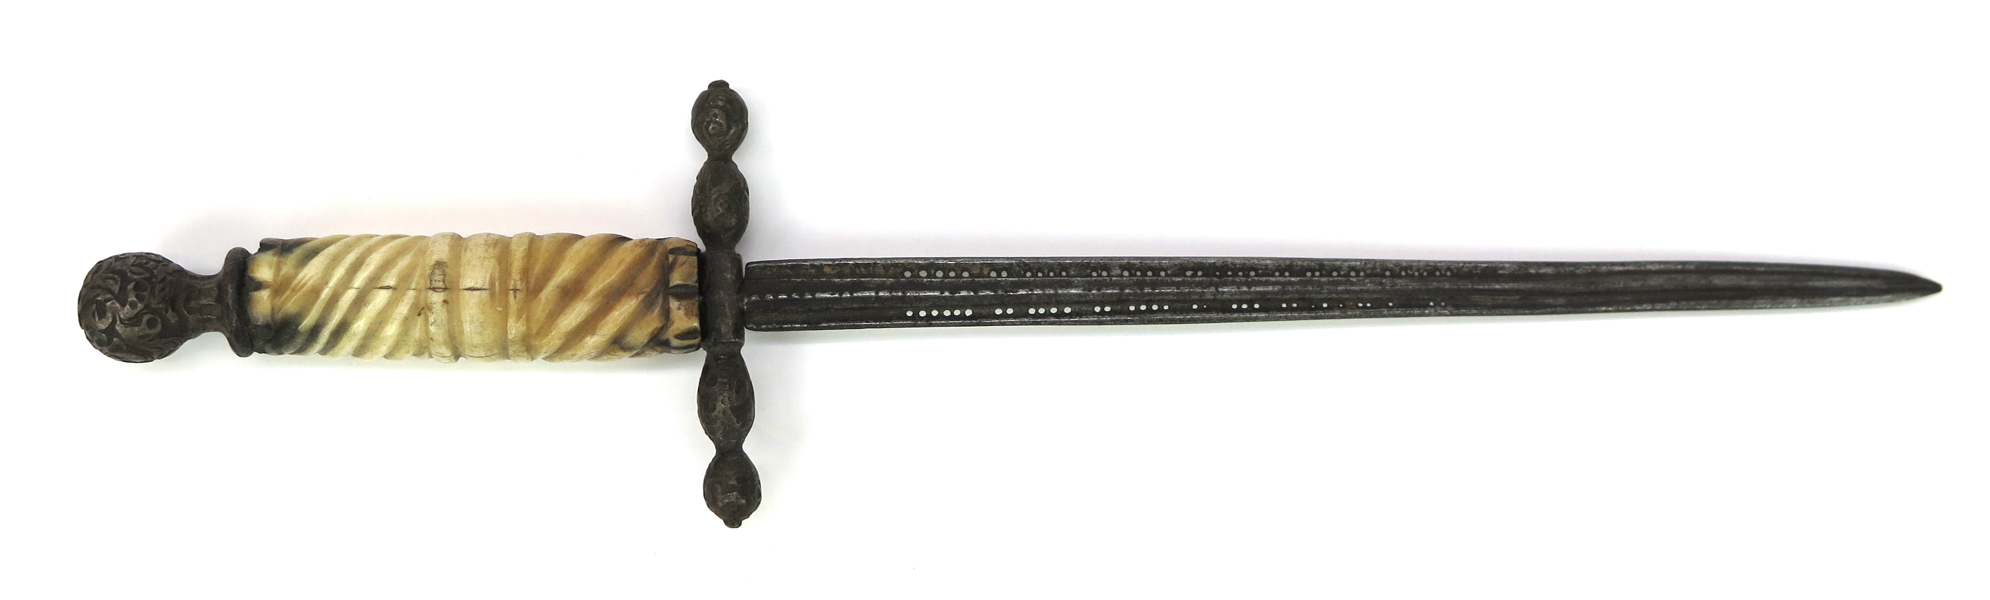 Vänsterhandsdolk, stål med benskaft, så kallad stiletto, 1600-tal, l 27 cm_35801a_lg.jpeg